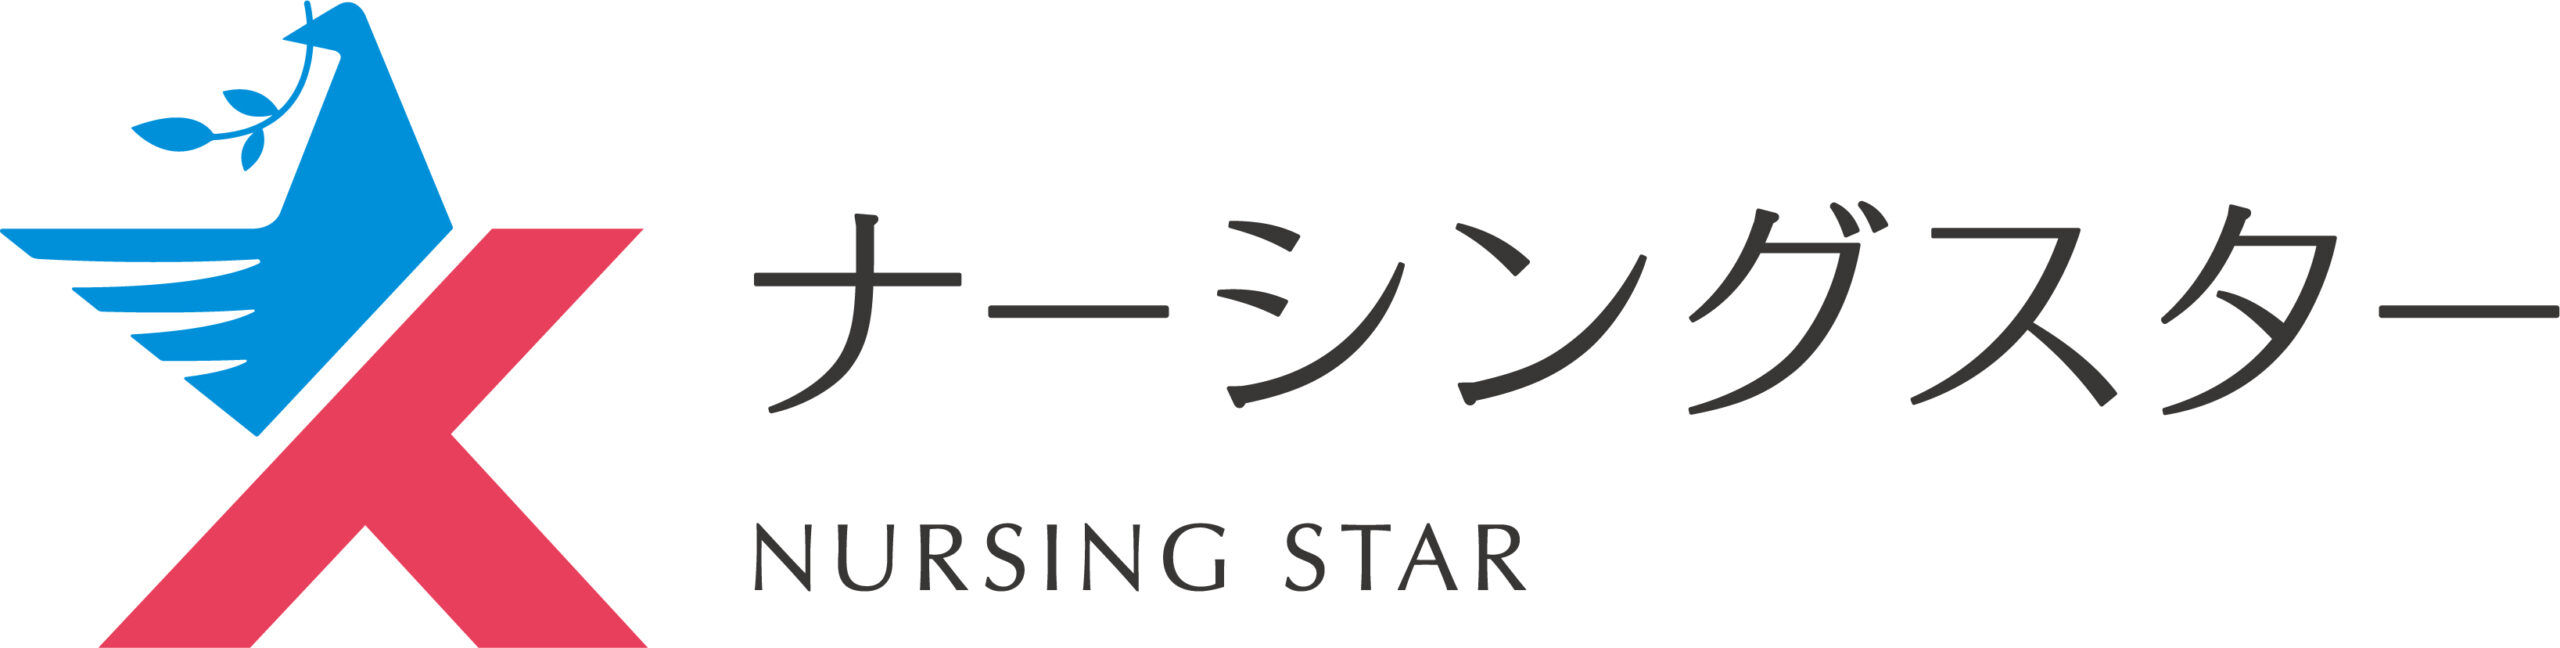 Nursing Star